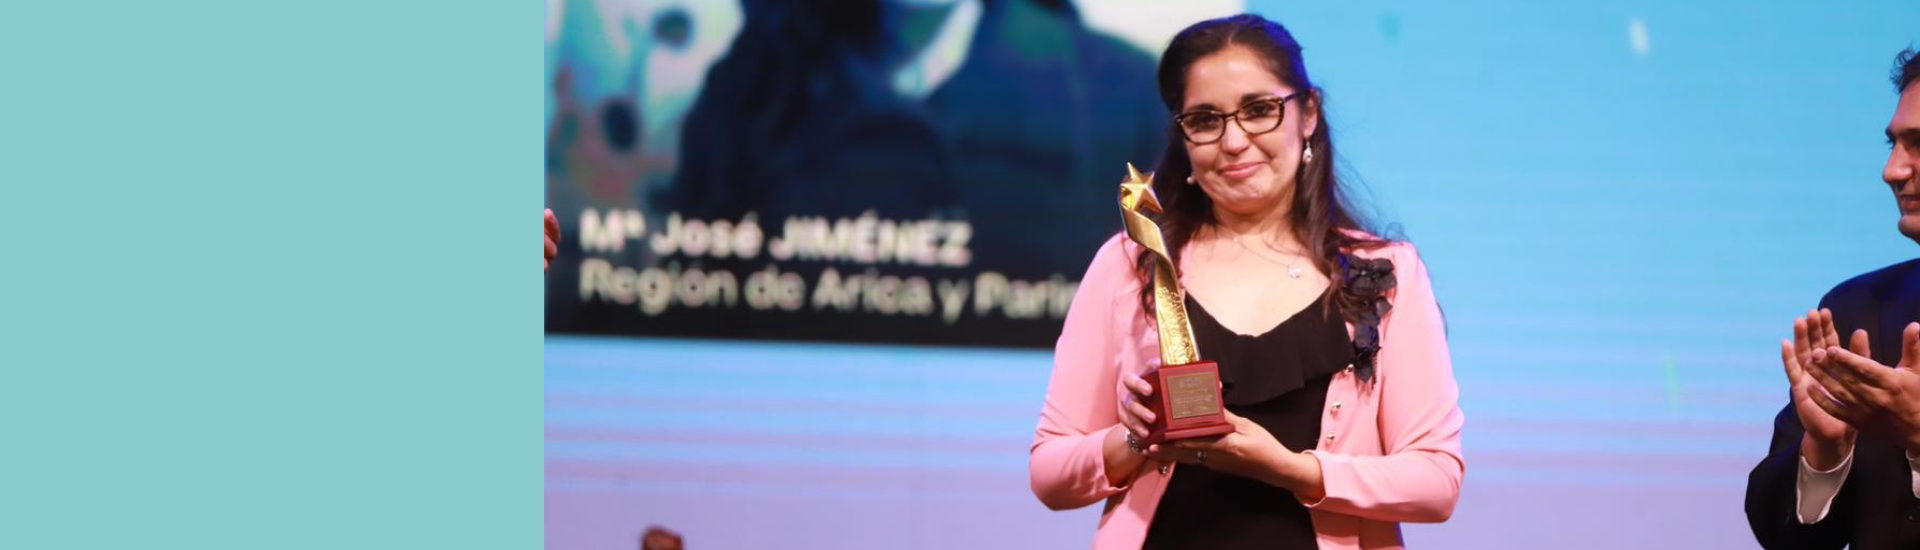 María Jose, ganadora del GTP Chile en la categoría de música